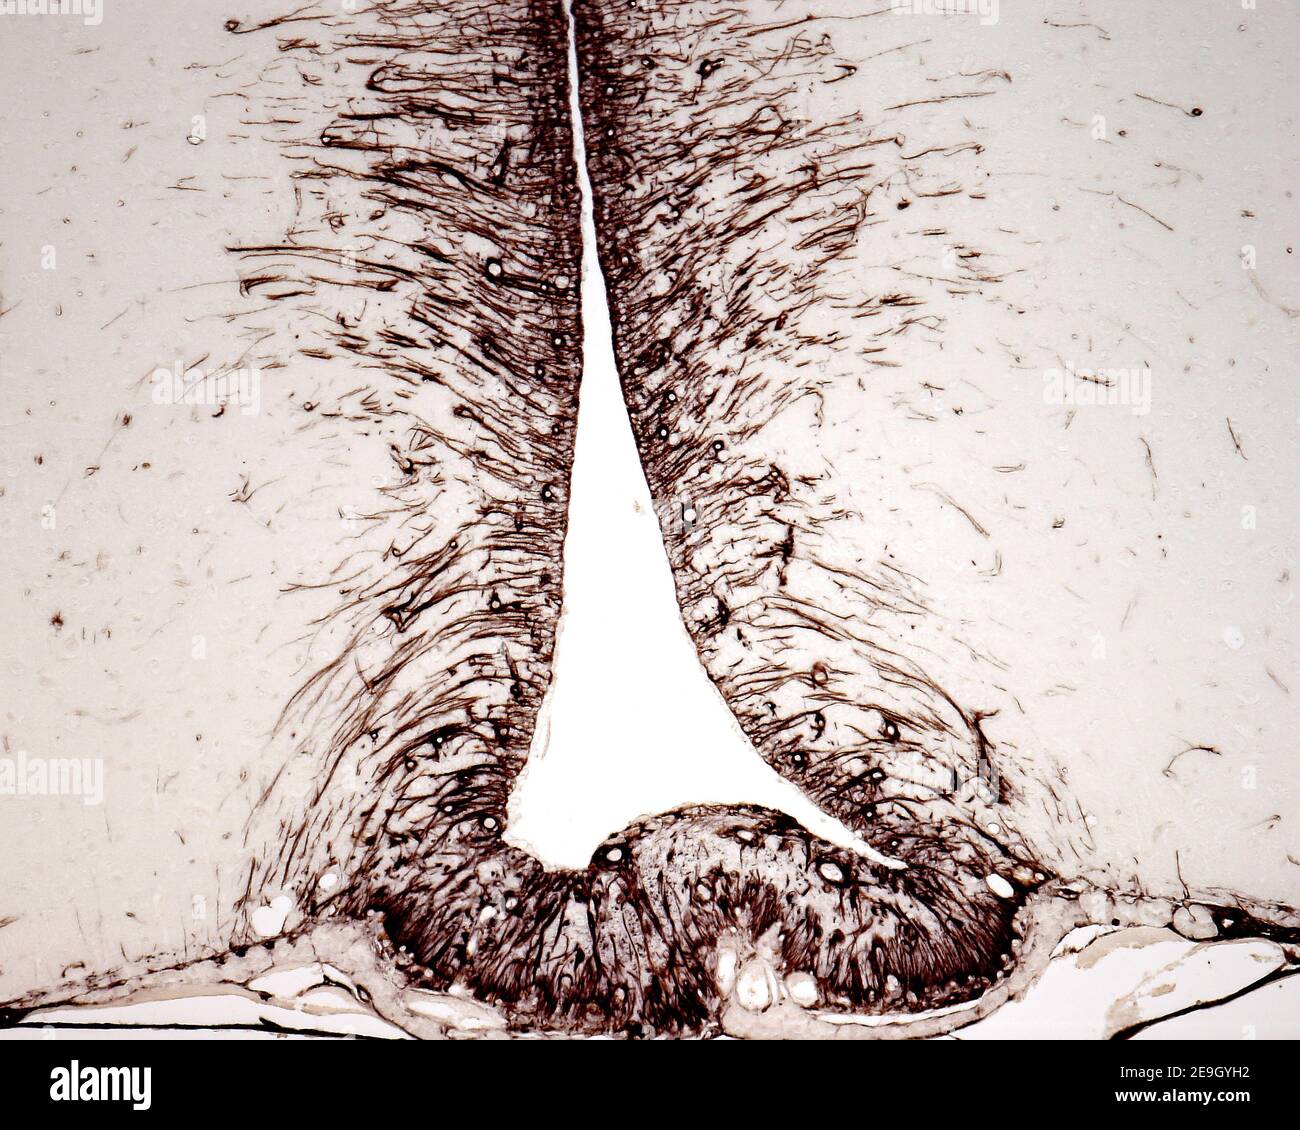 Tanyciti nel pavimento del terzo ventricolo colorati con tecniche immunoistochimiche per la vimentina. Foto Stock